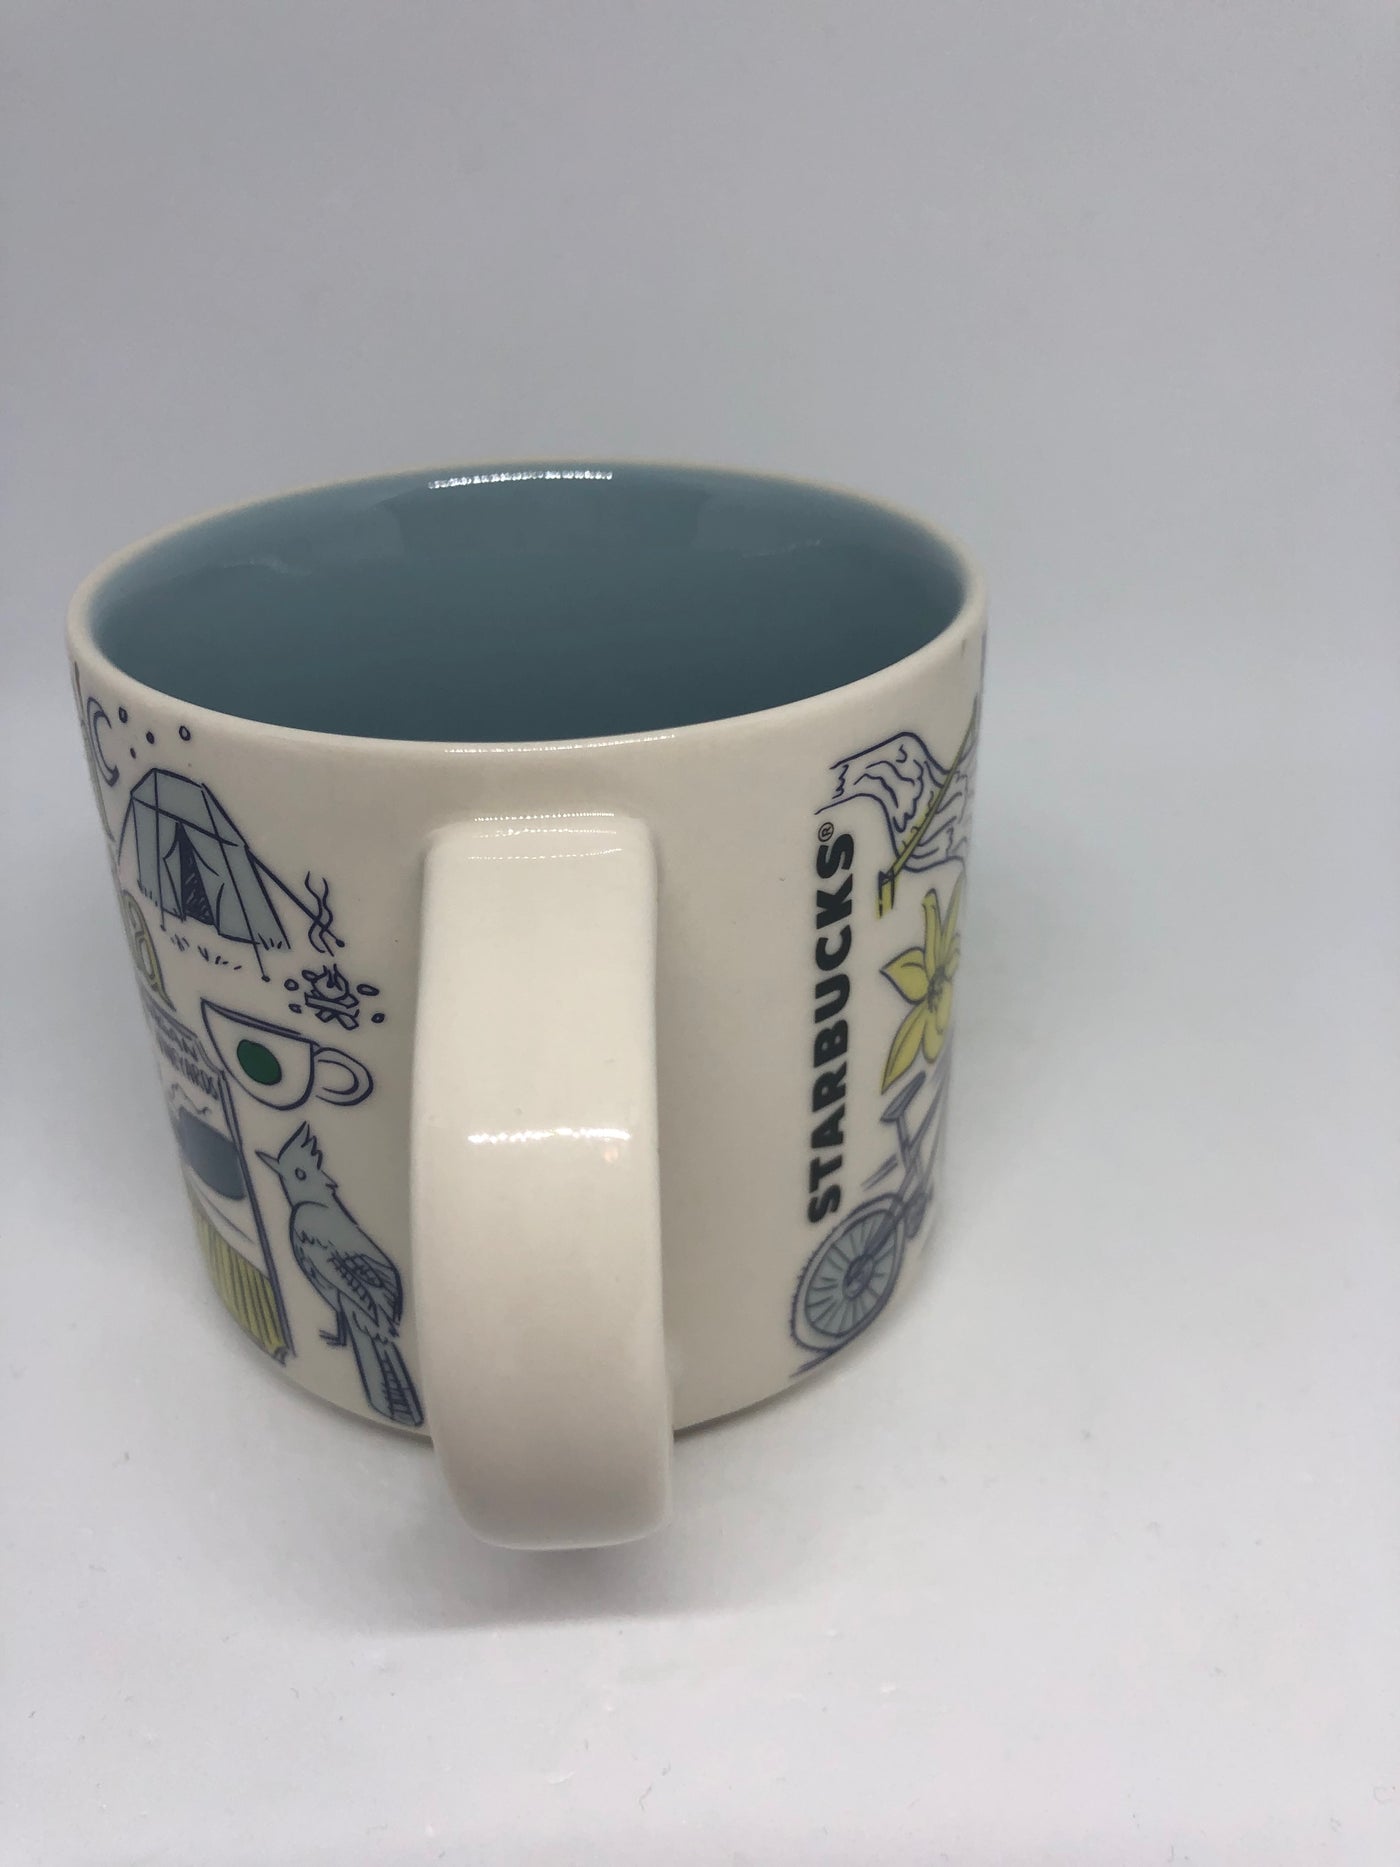 Starbucks Been There Series British Columbia Ceramic Coffee Mug New with Box